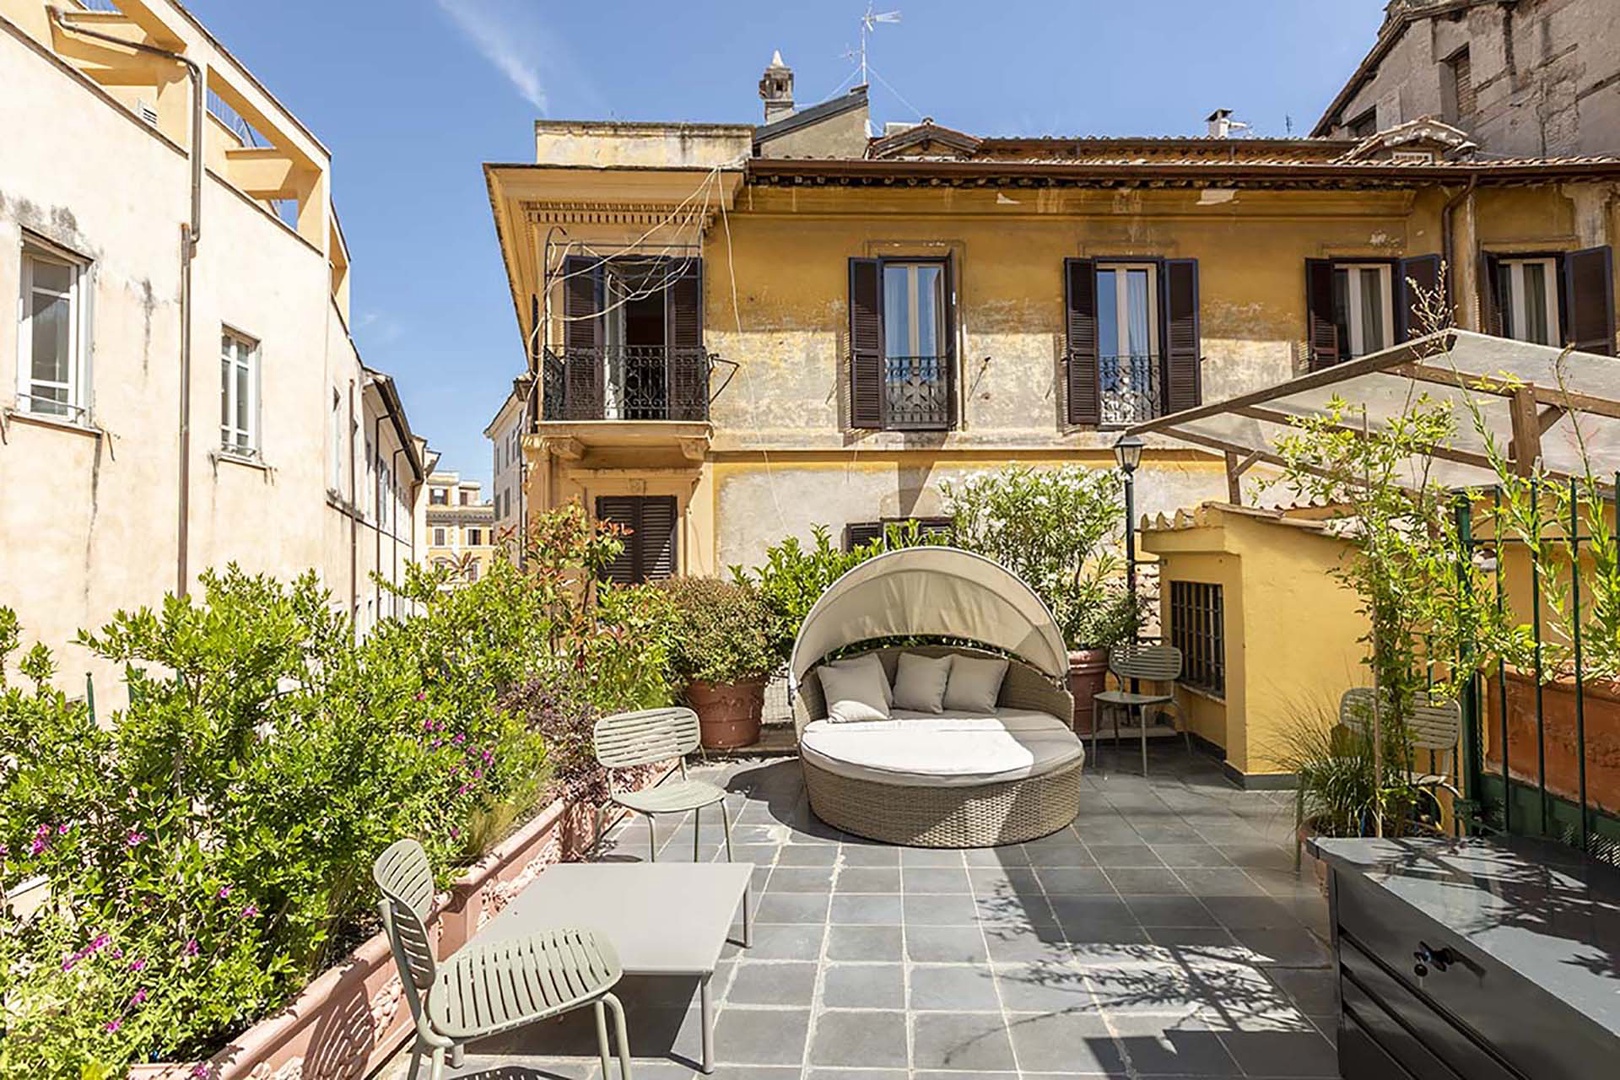 Luxury terrace in the heart of Rome.